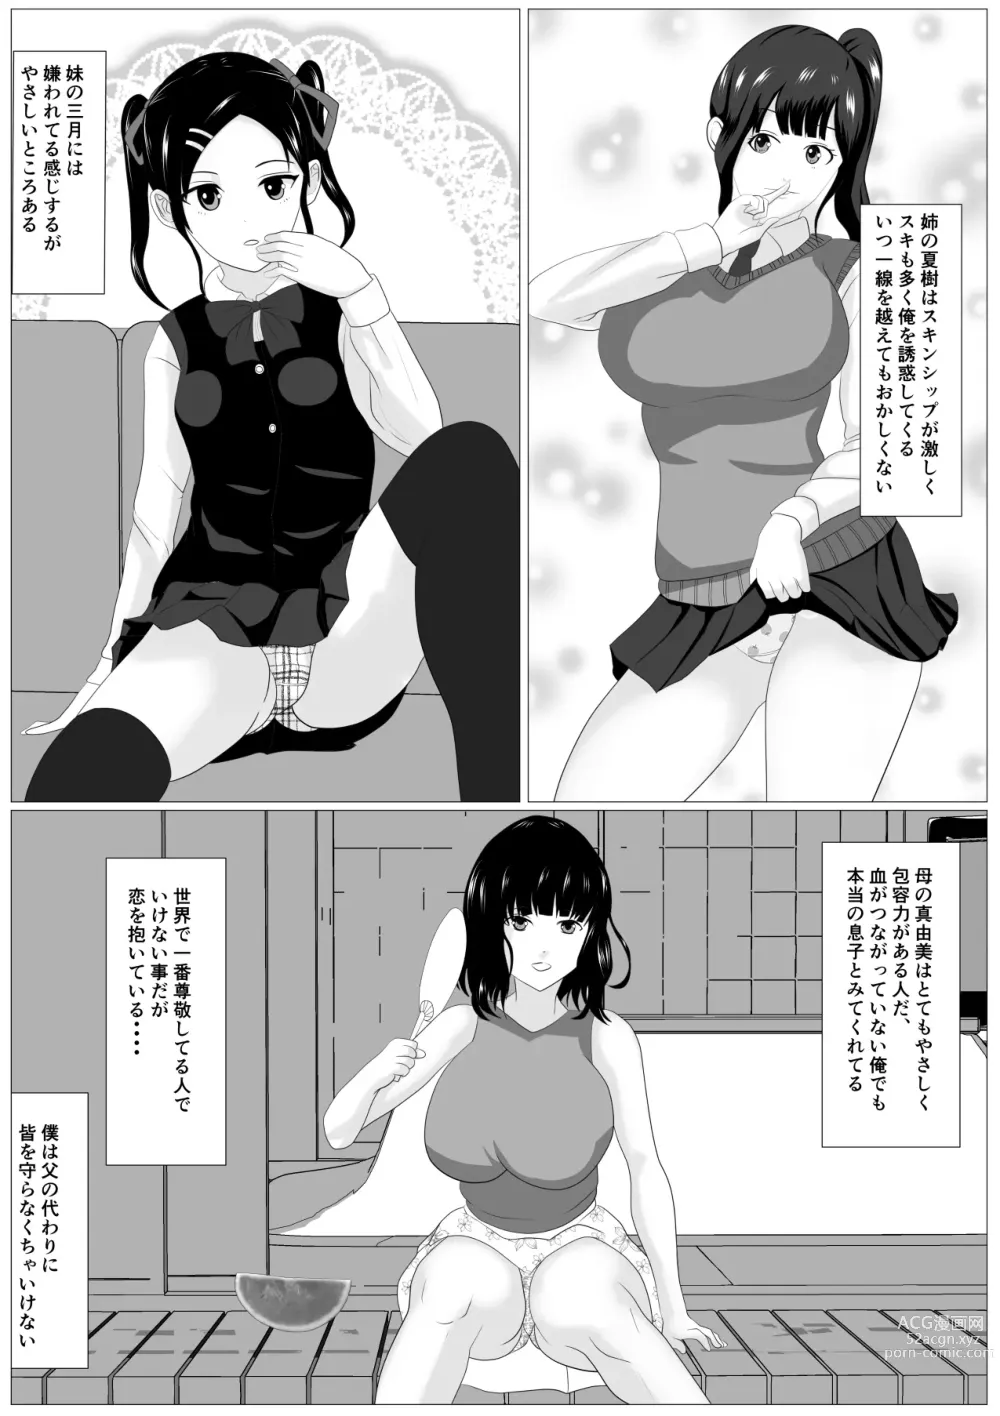 Page 5 of doujinshi Kazoku Torare